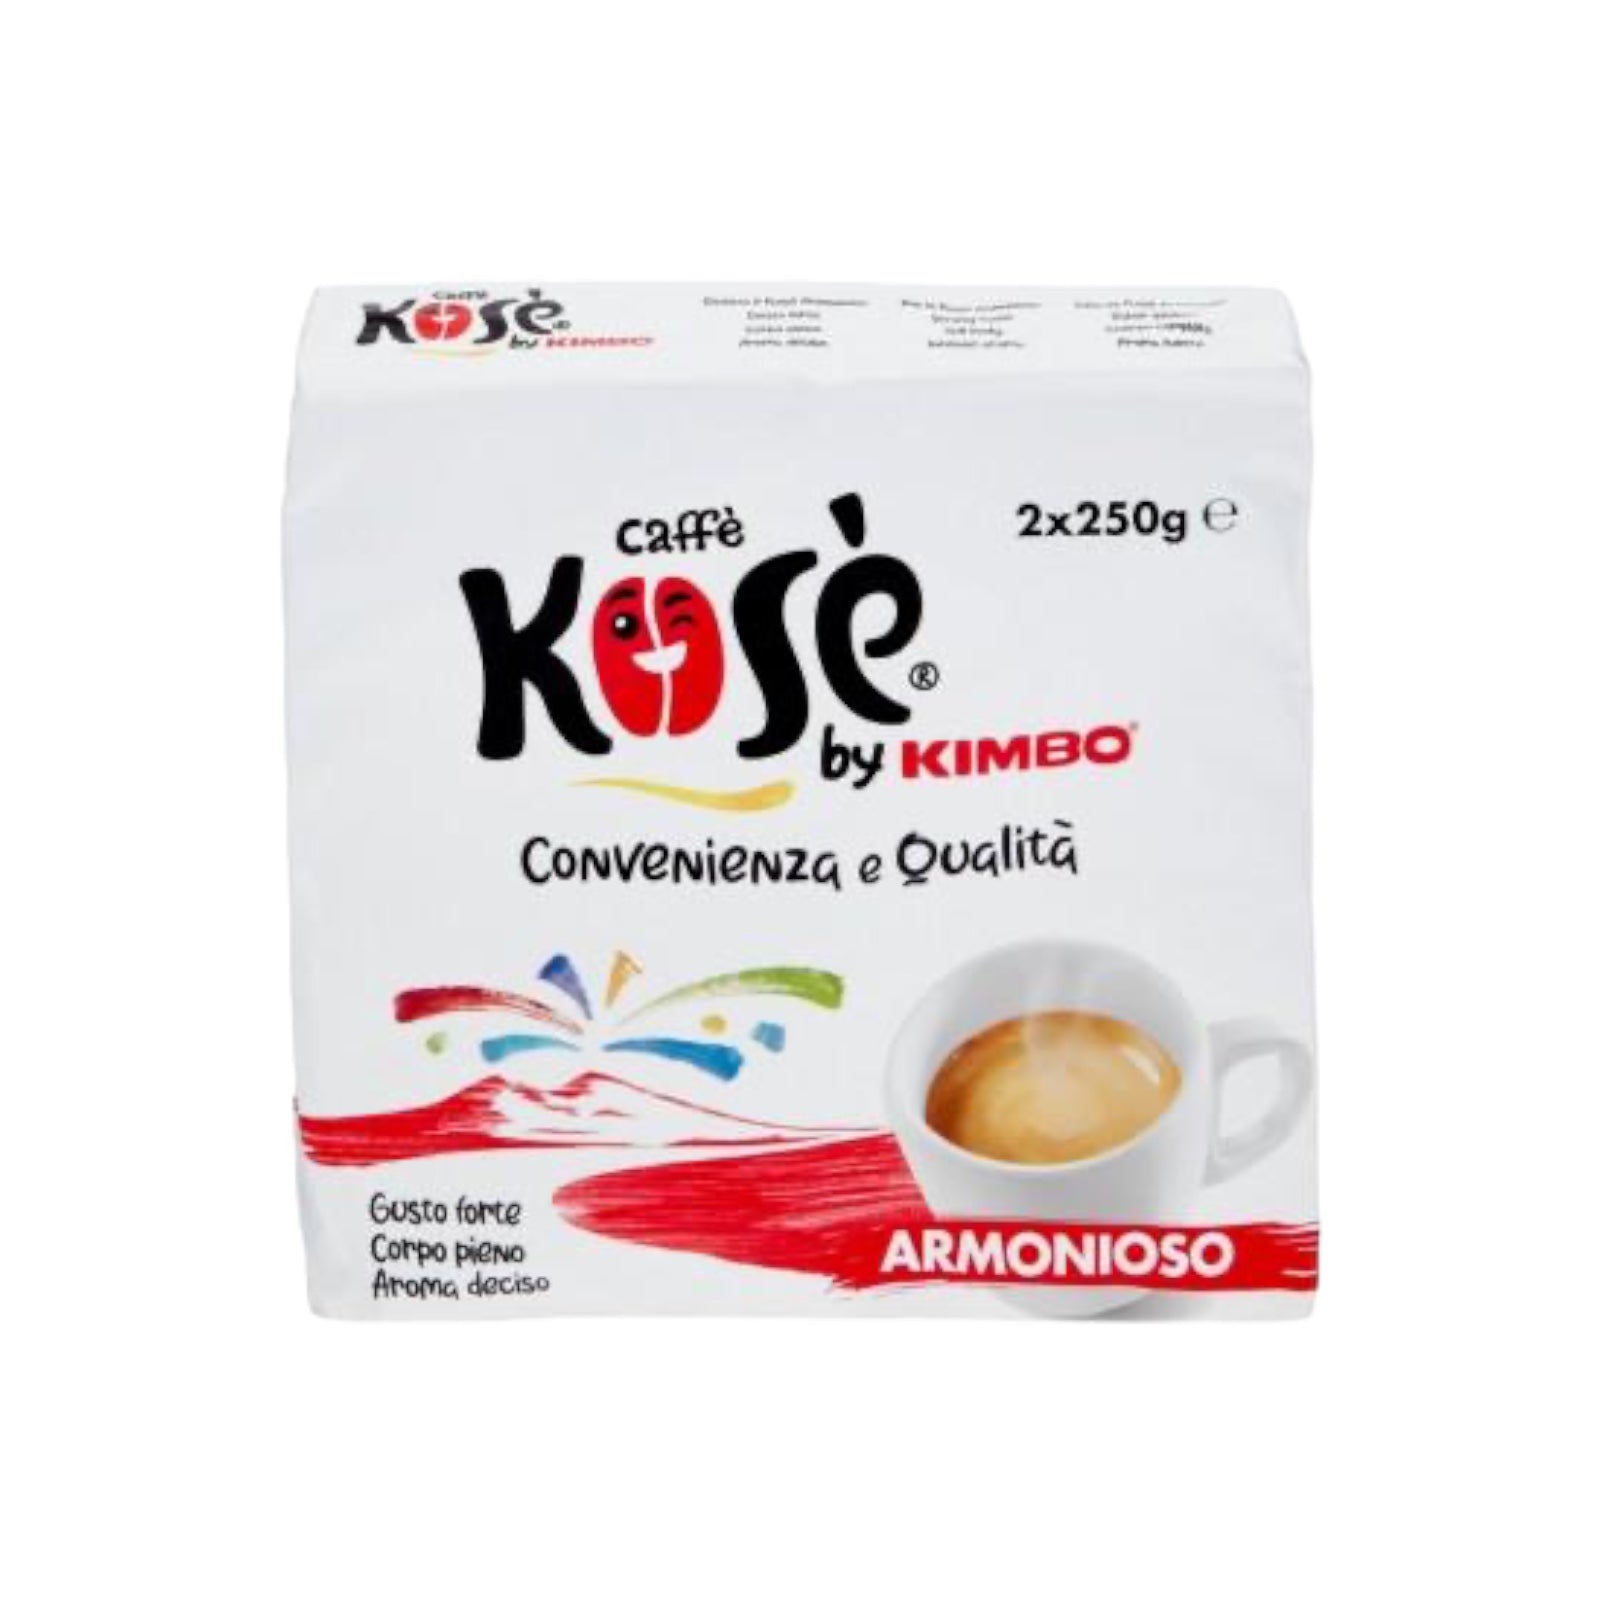 Italian Ground Coffee Kose Armonioso by Kimbo 2x250g